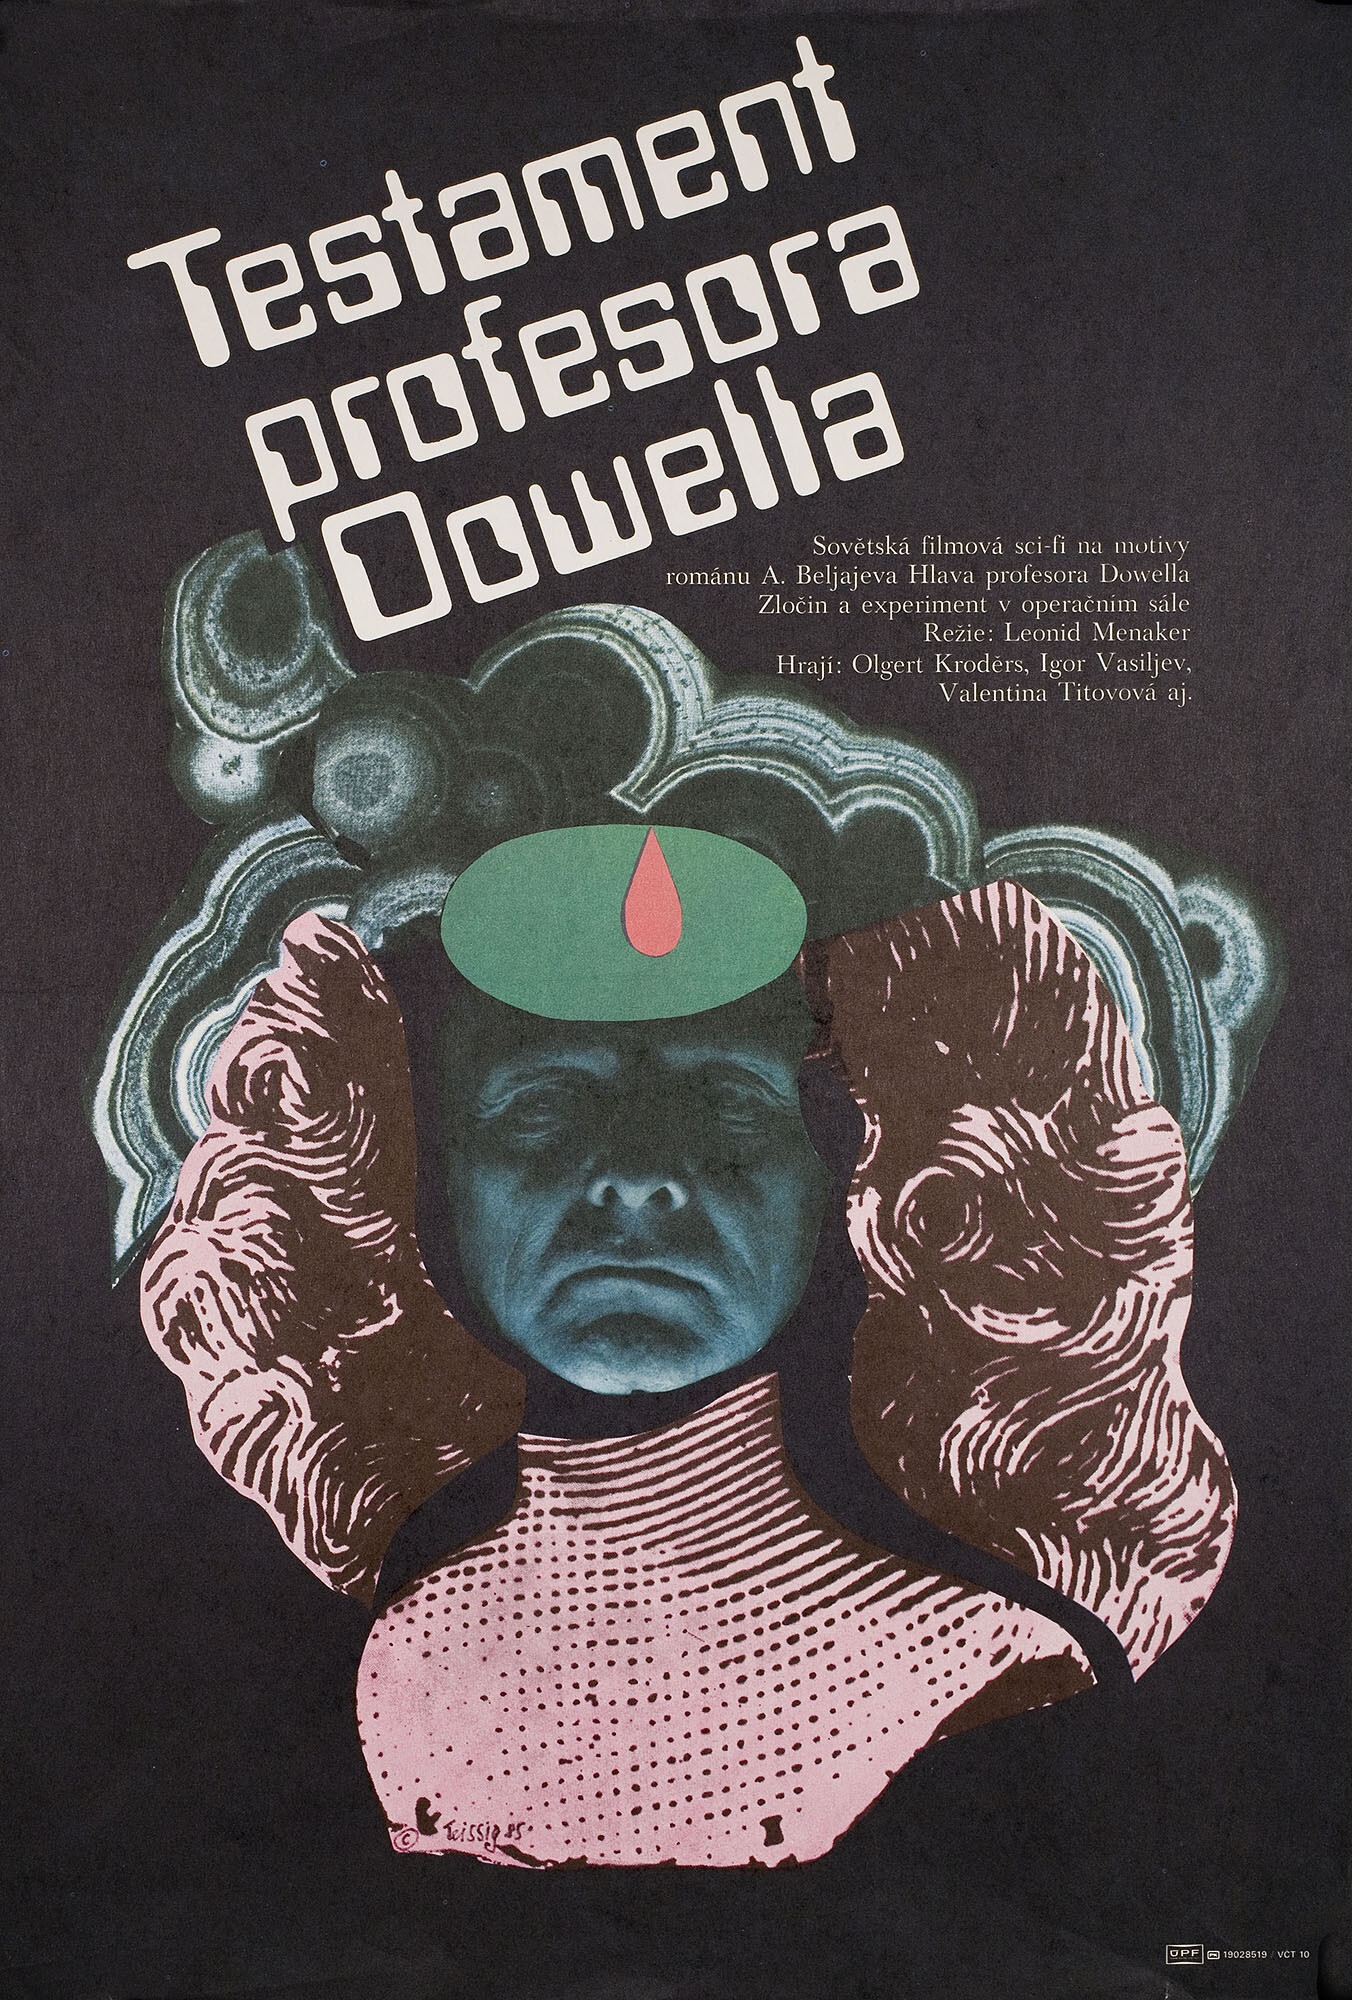 Завещание профессора Доуэля (режиссёр Леонид Менакер, 1985), чехословацкий постер к фильму, автор Карел Тейссиг, 1985 год